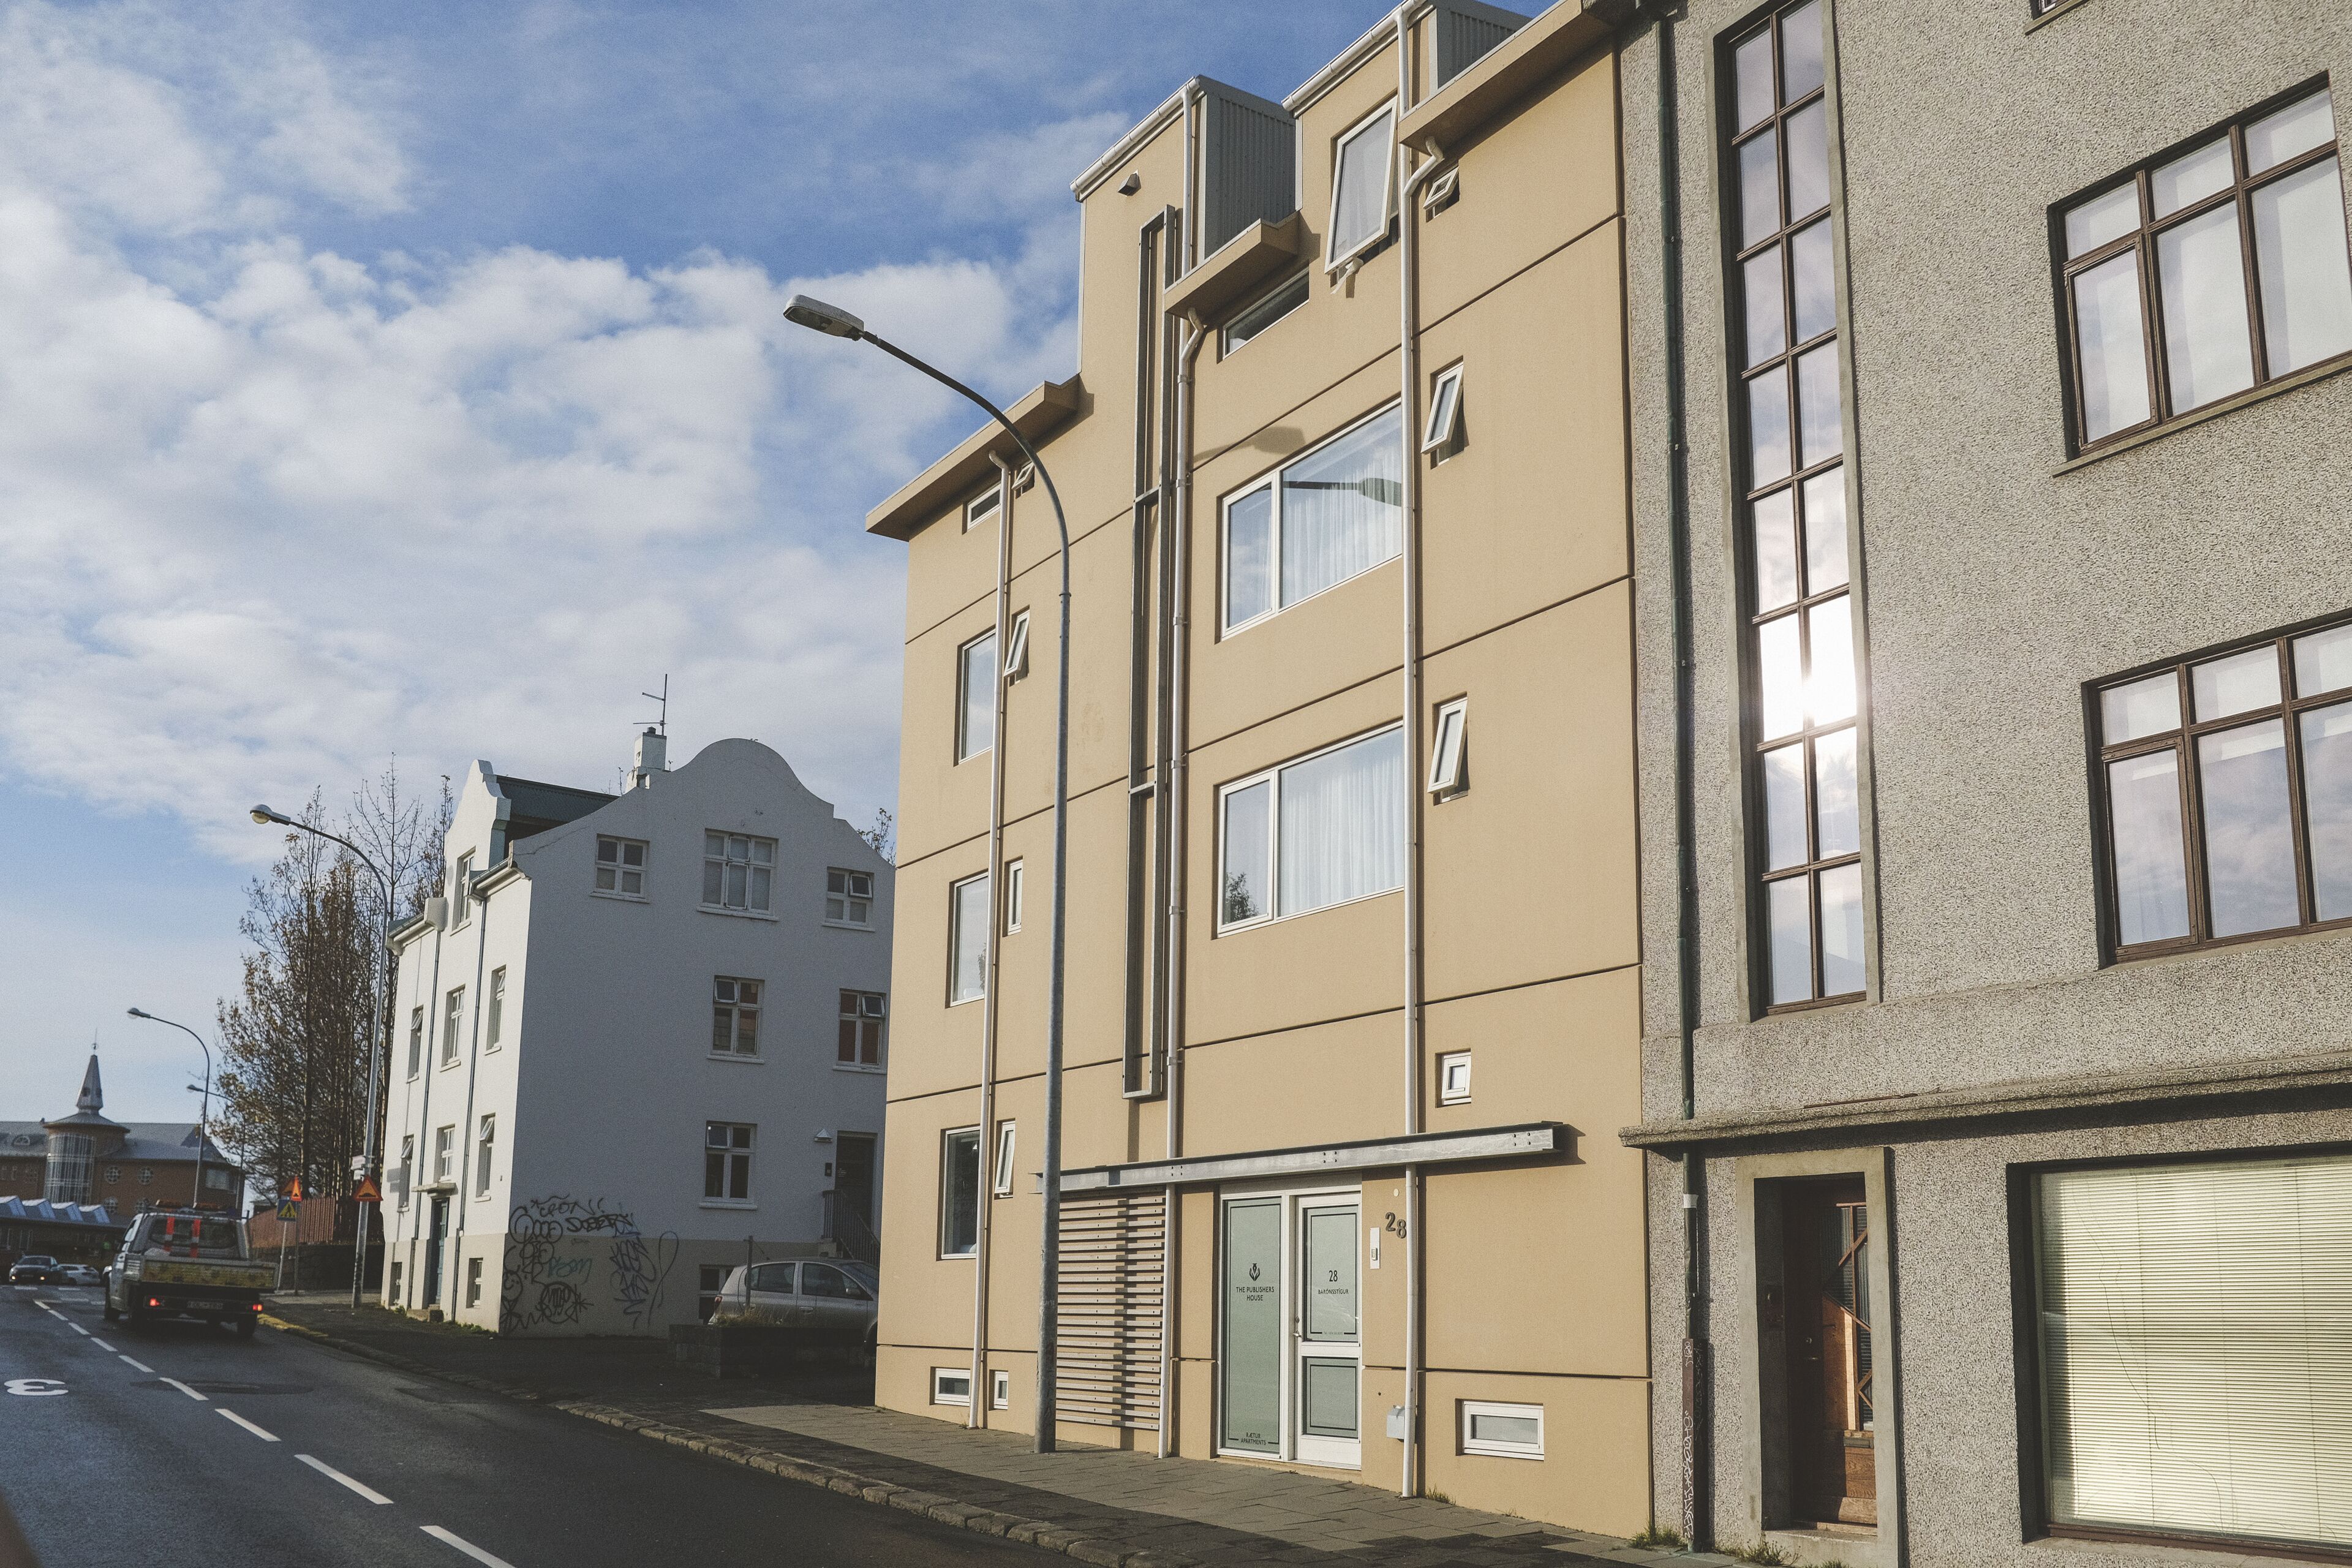 The Publishers House–Reykjavik Apartments